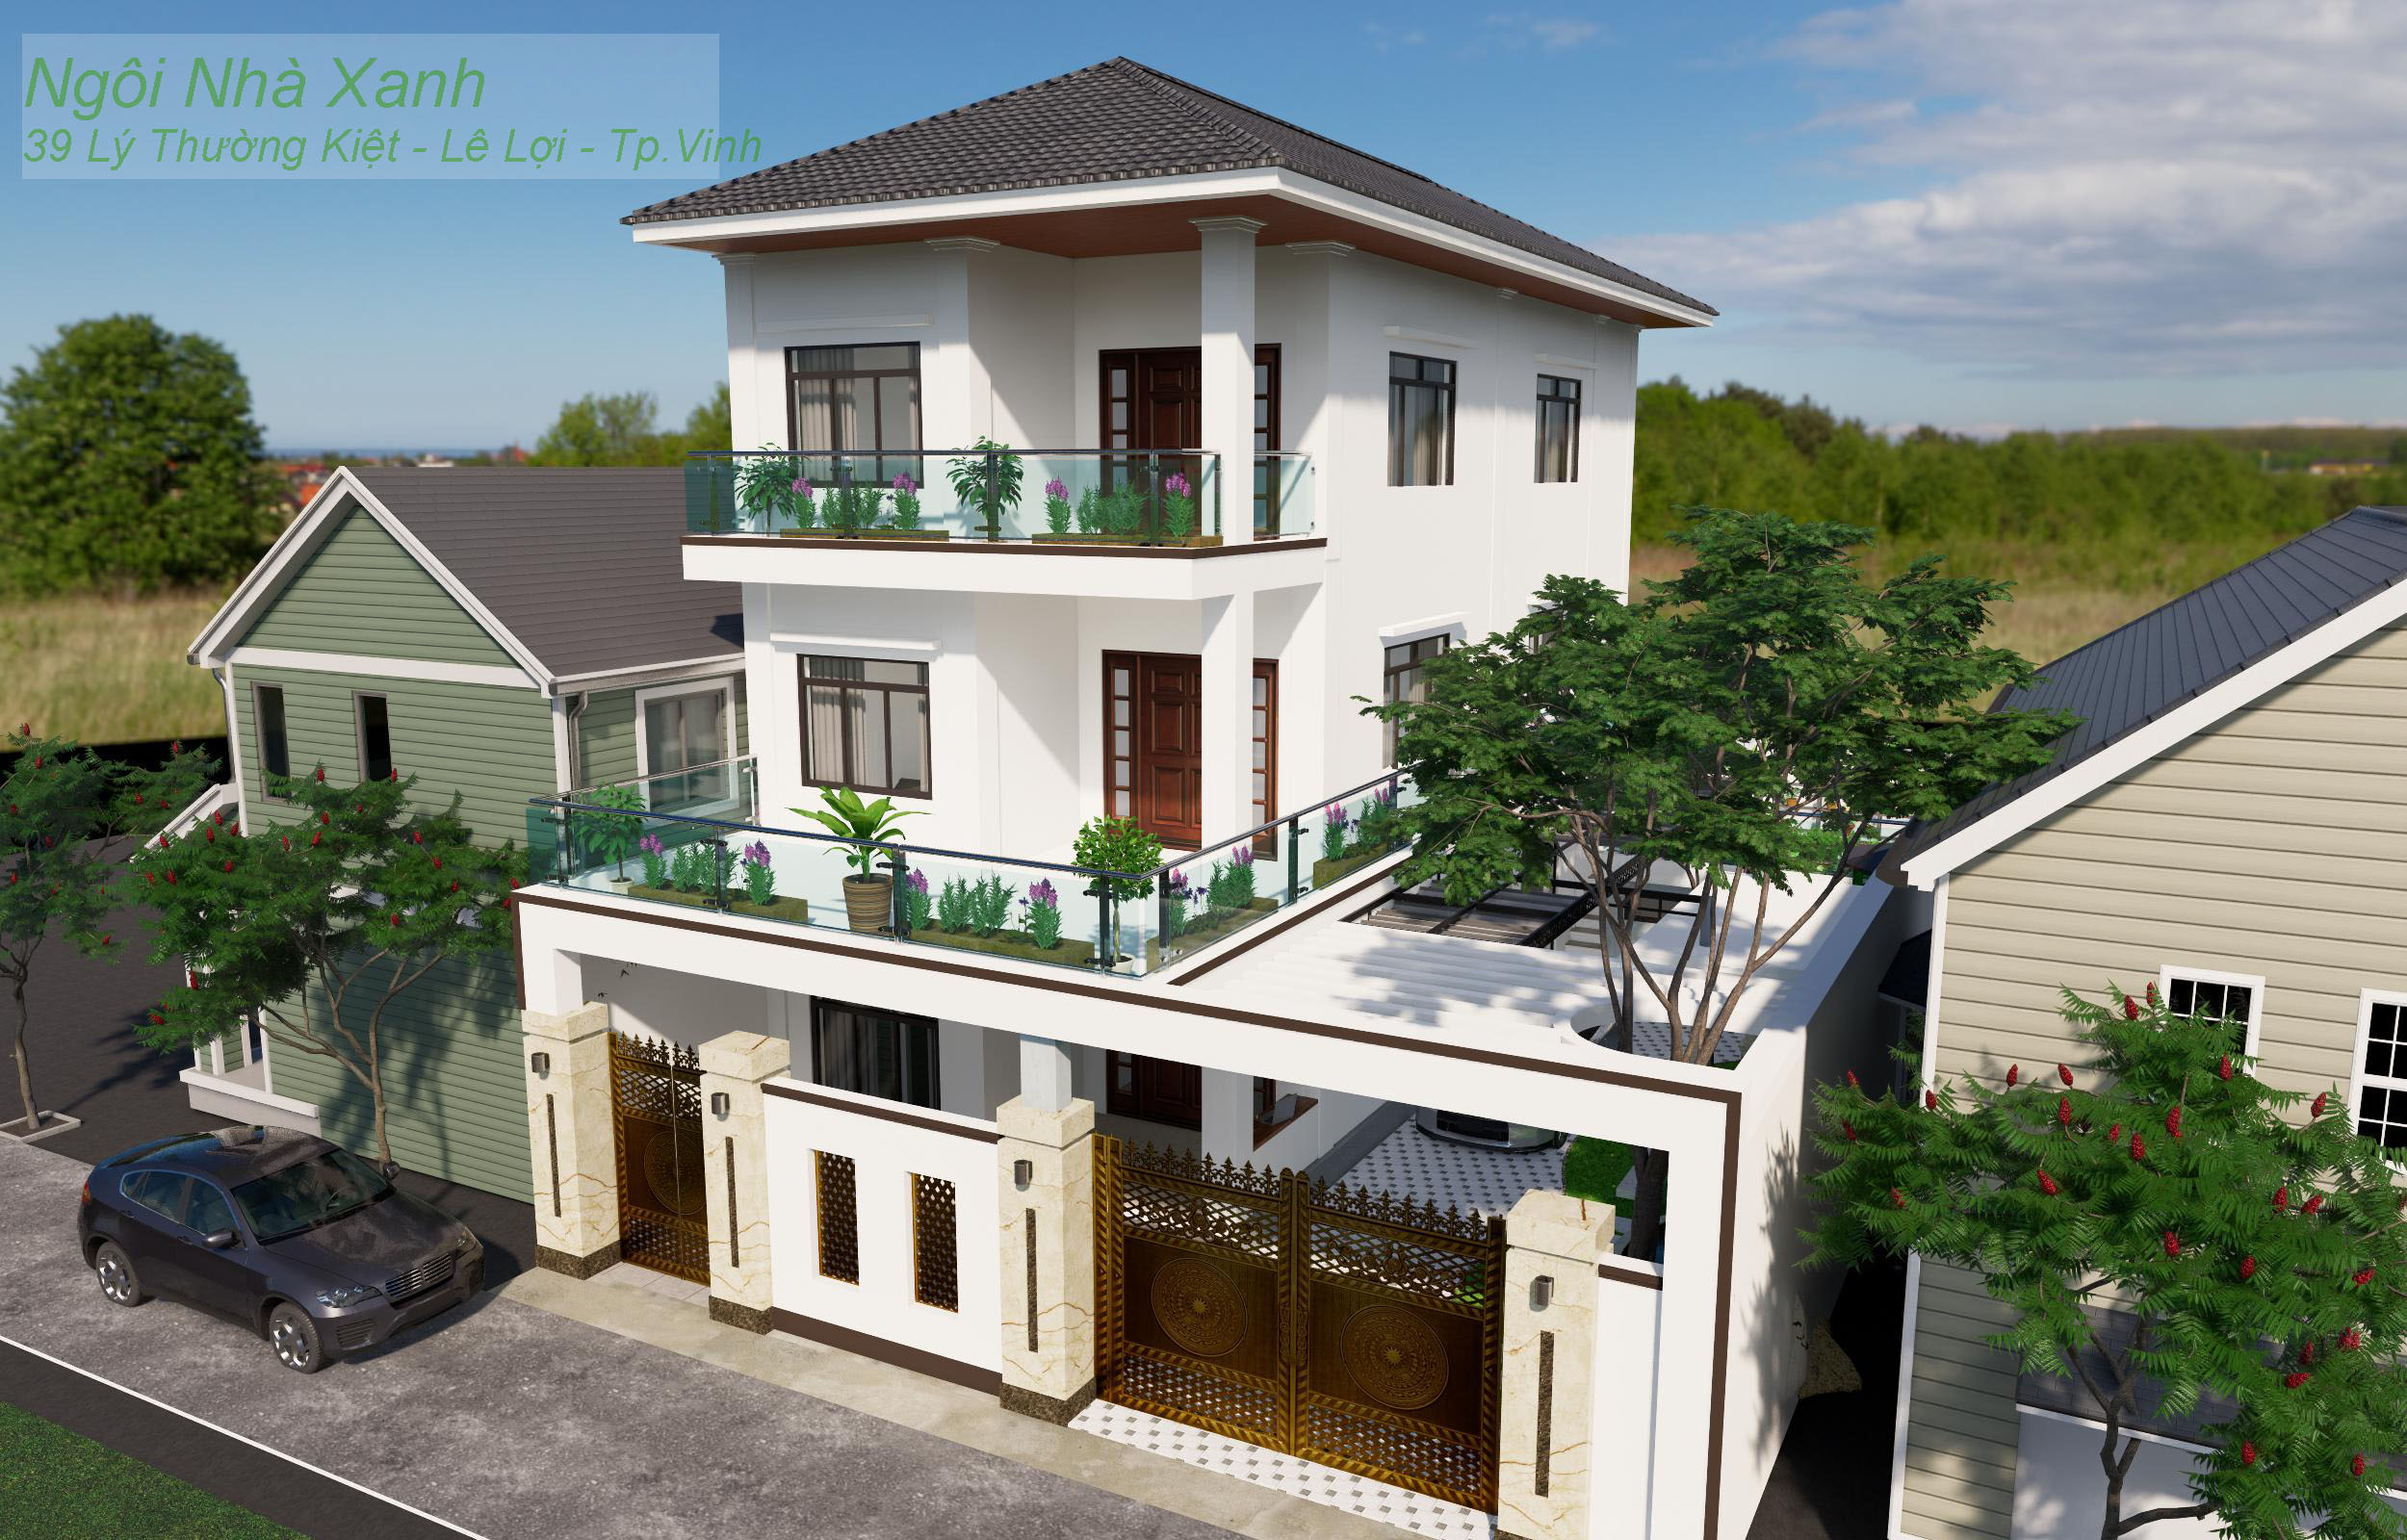 Cải tạo kiến trúc nội thất nhà biệt thự tại đường Nguyễn Duy Bích Tp.Vinh, Nghệ An